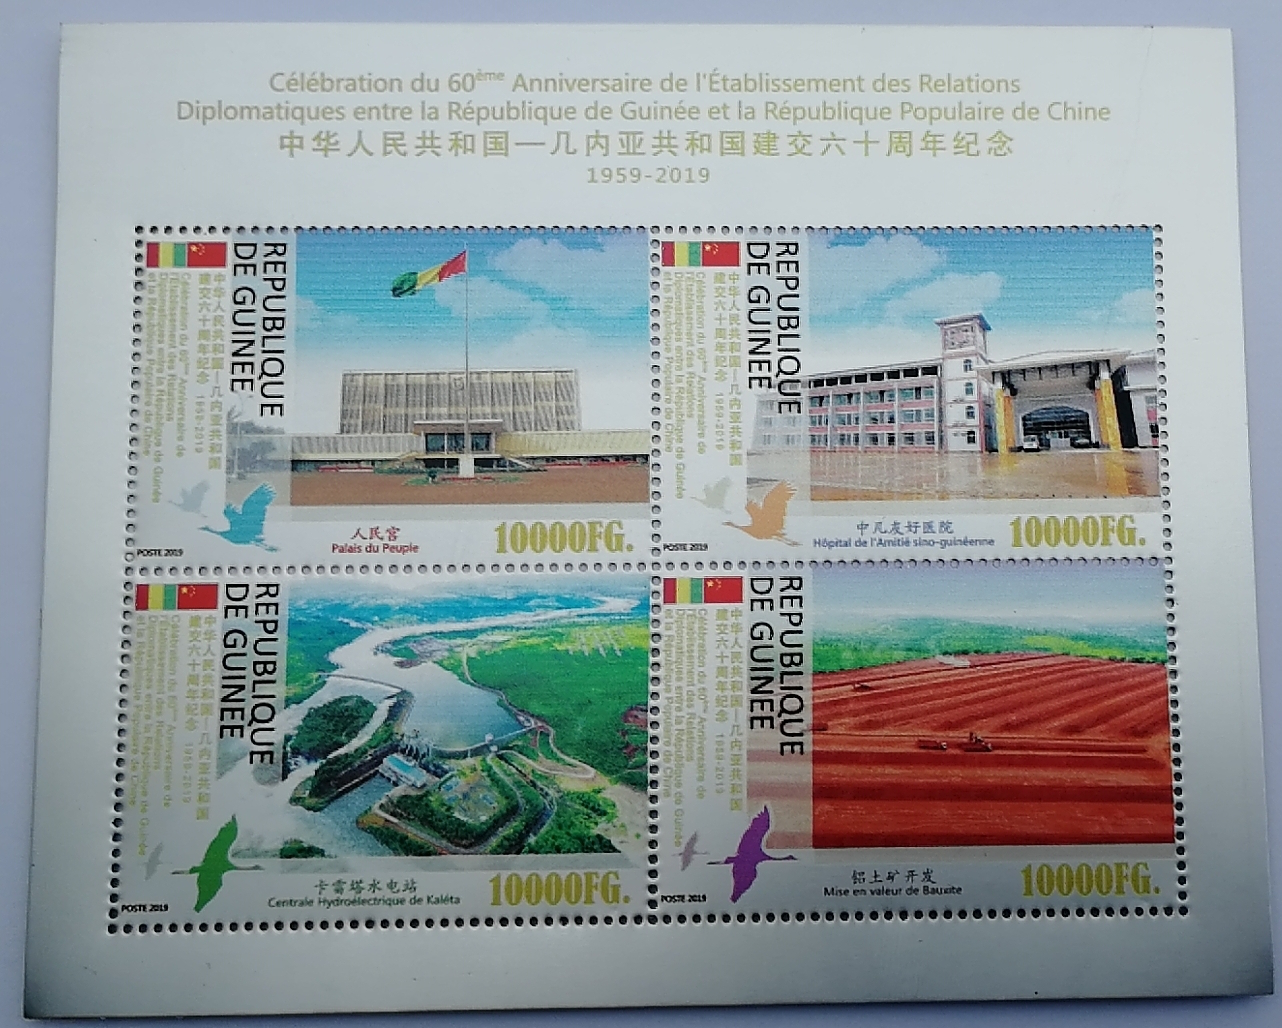 中铝瑞闽公司承制中国-几内亚建交六十周年铝箔纪念邮票